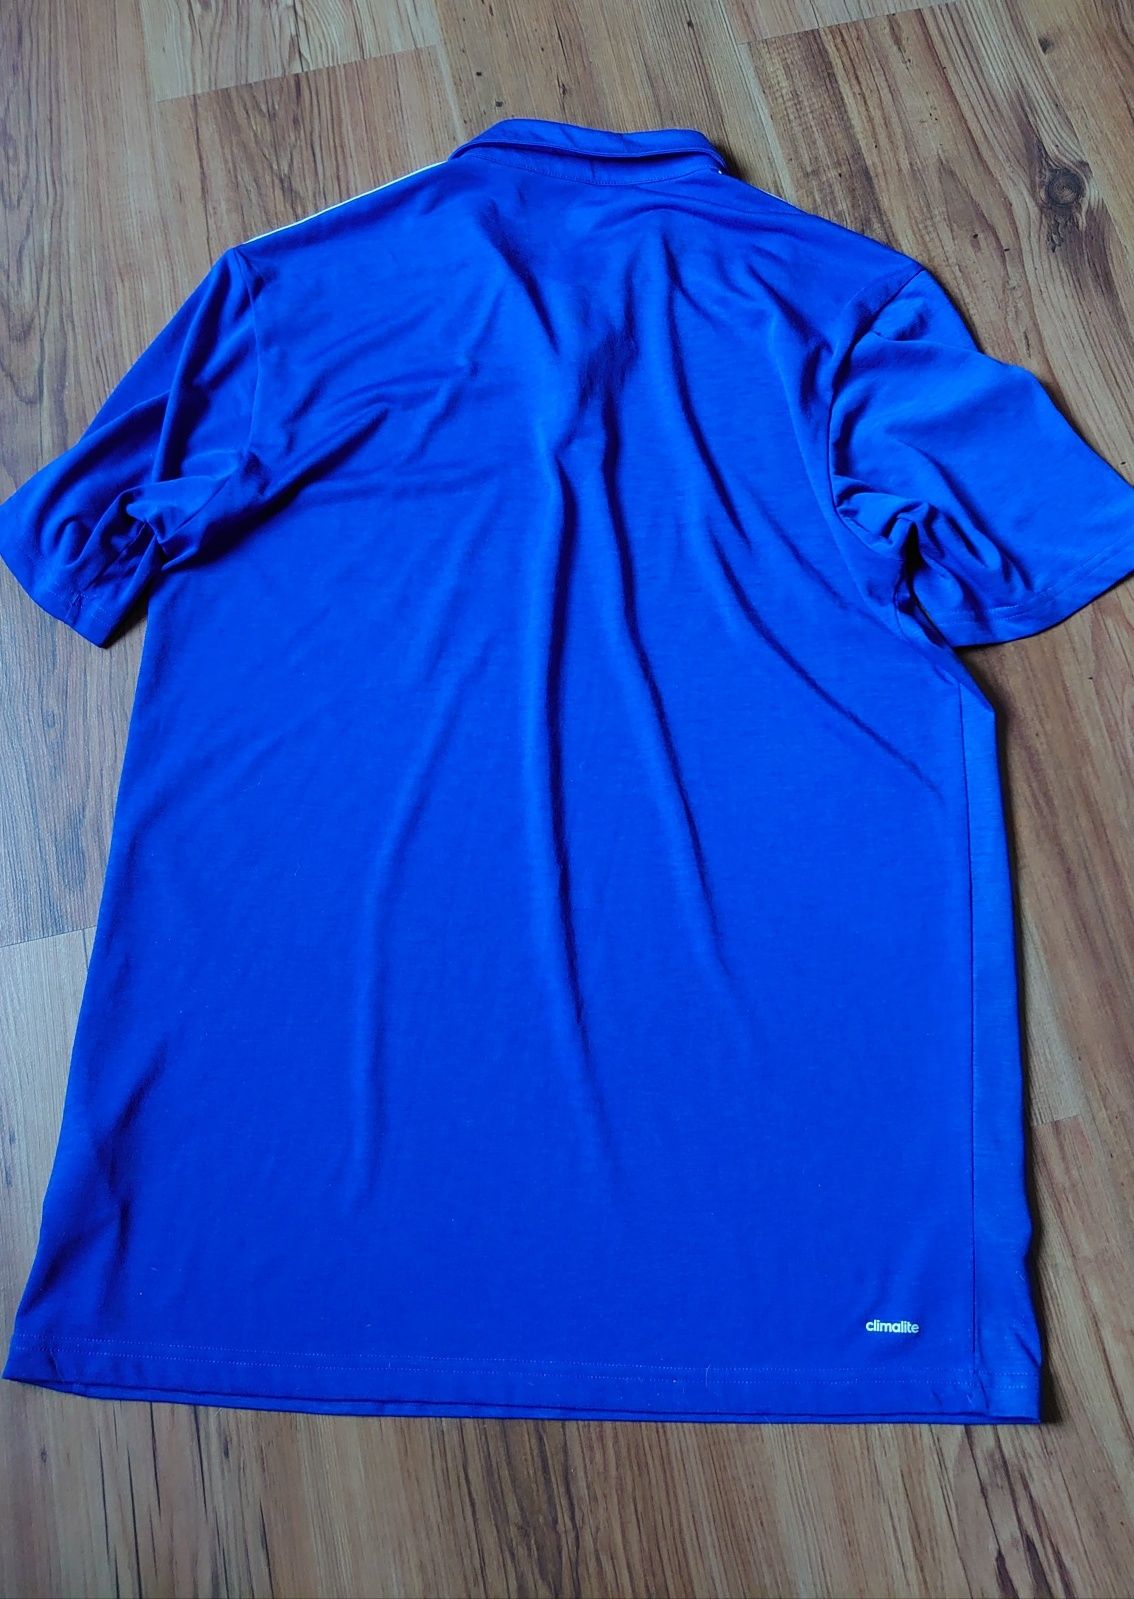 Niebieska koszulka krykietowa Adidas England Waitrose 2015 rozmiar M U